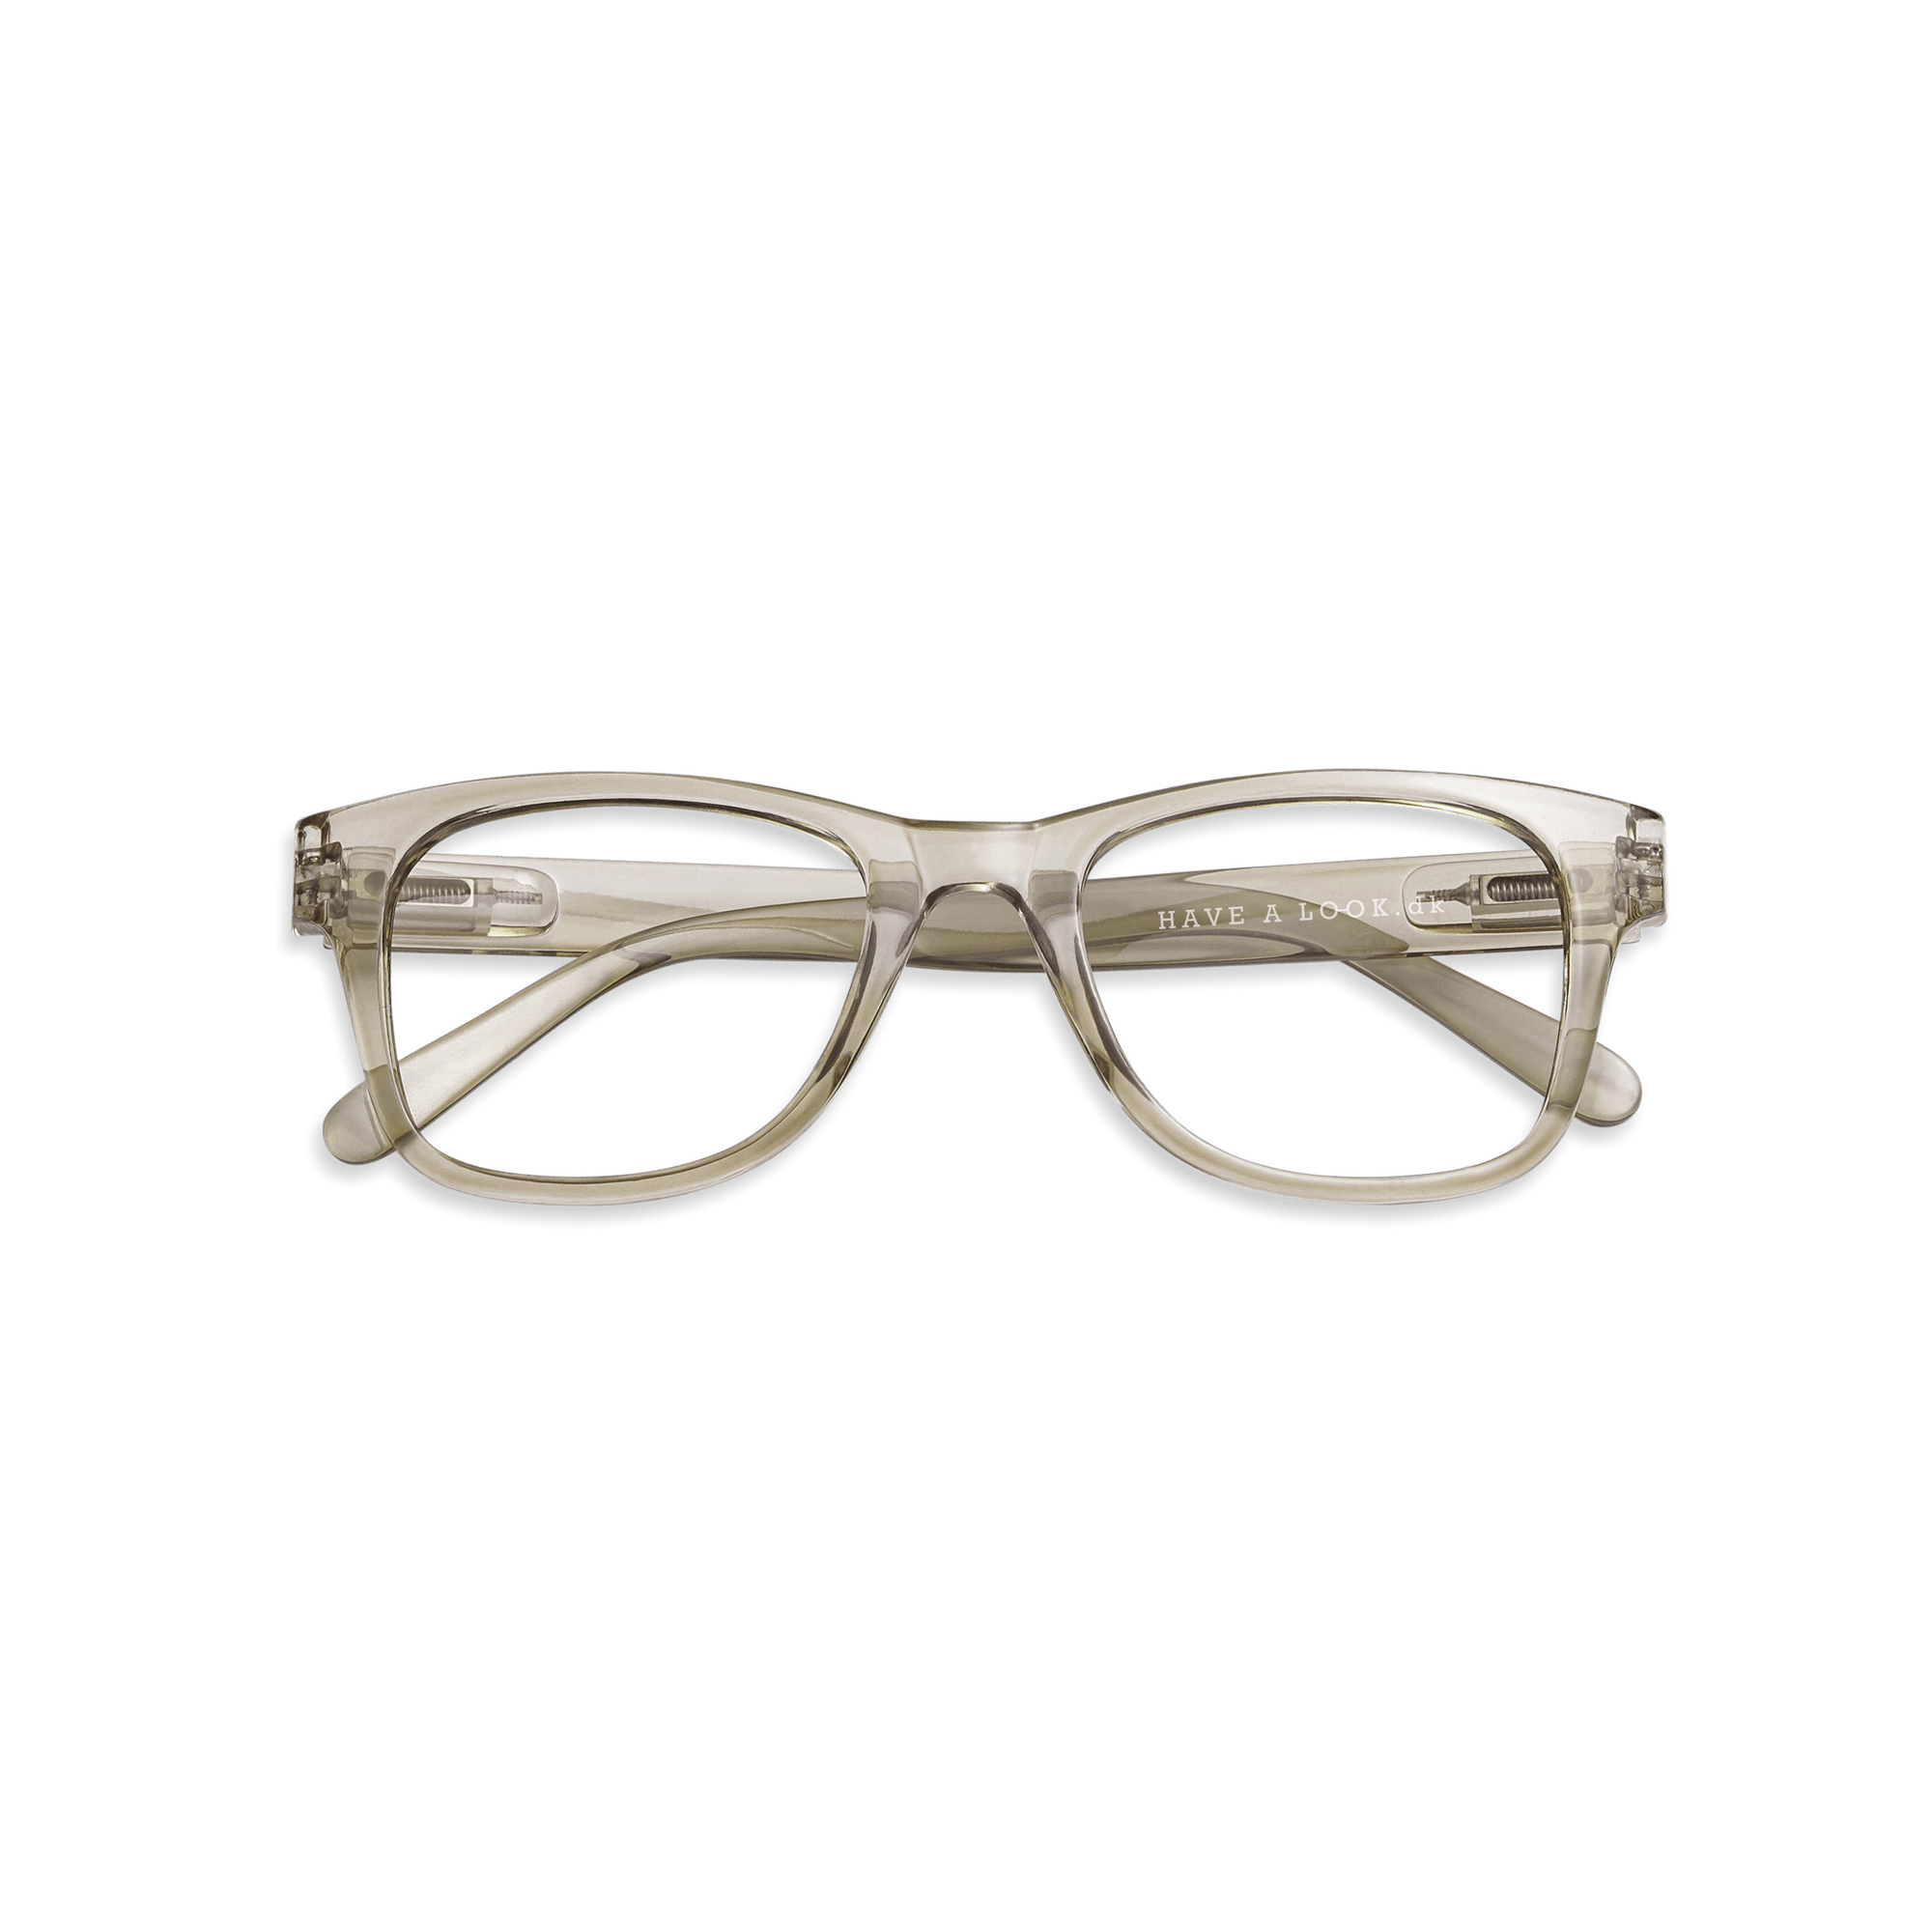 Minusbriller Type B - olive